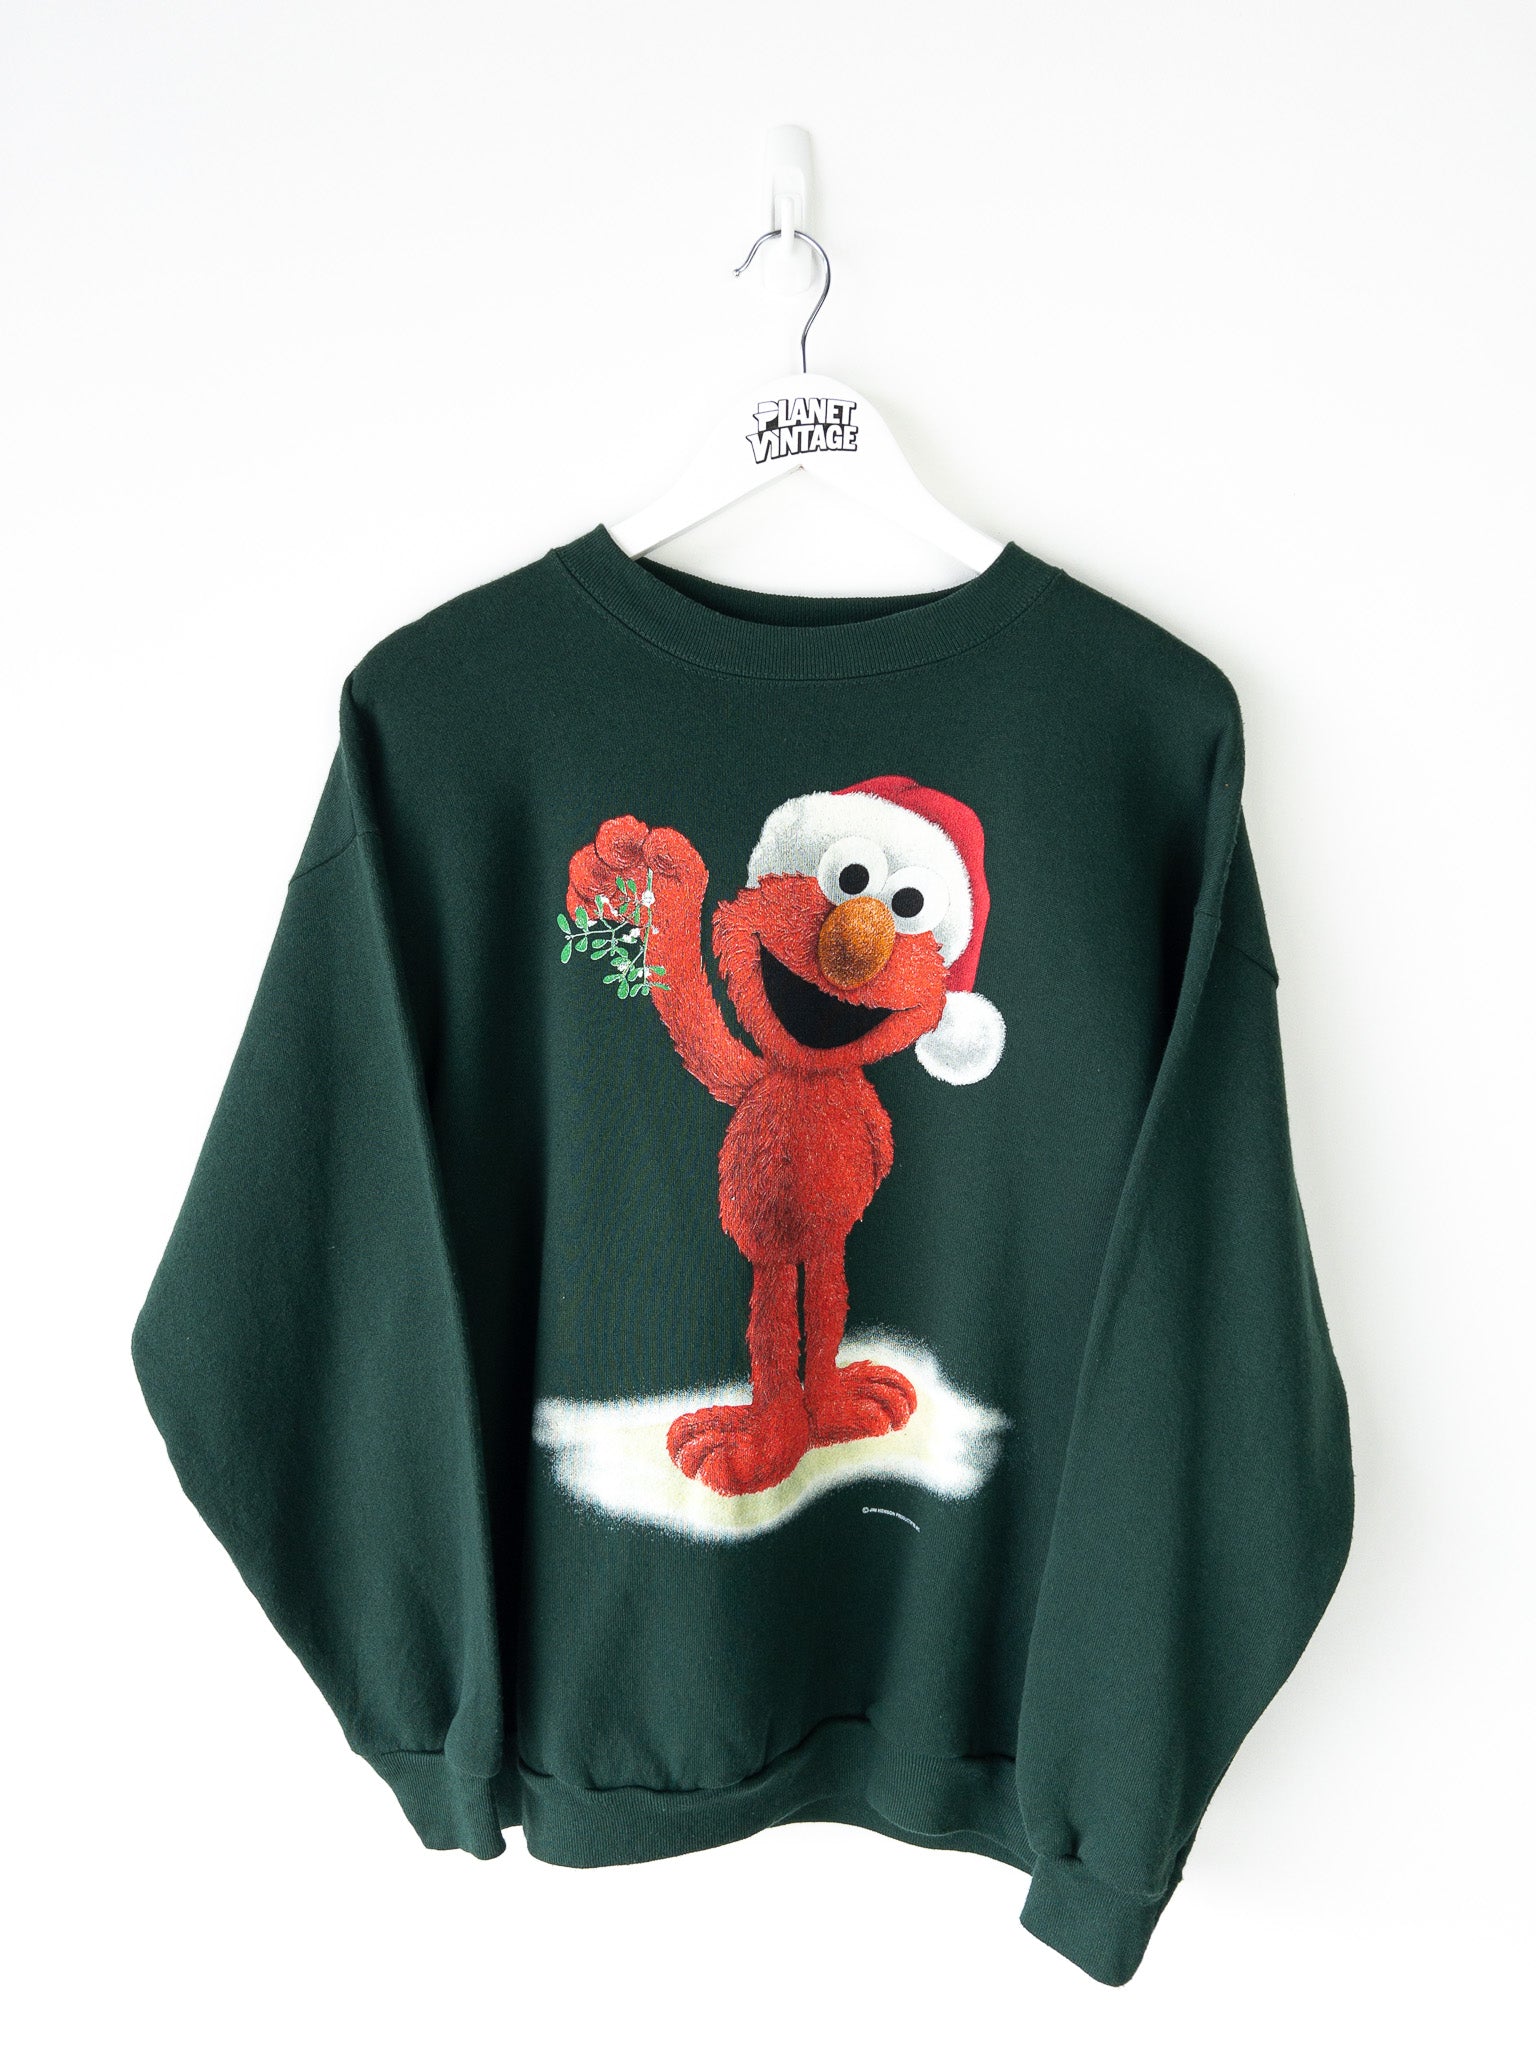 Vintage Elmo Sweatshirt (L)